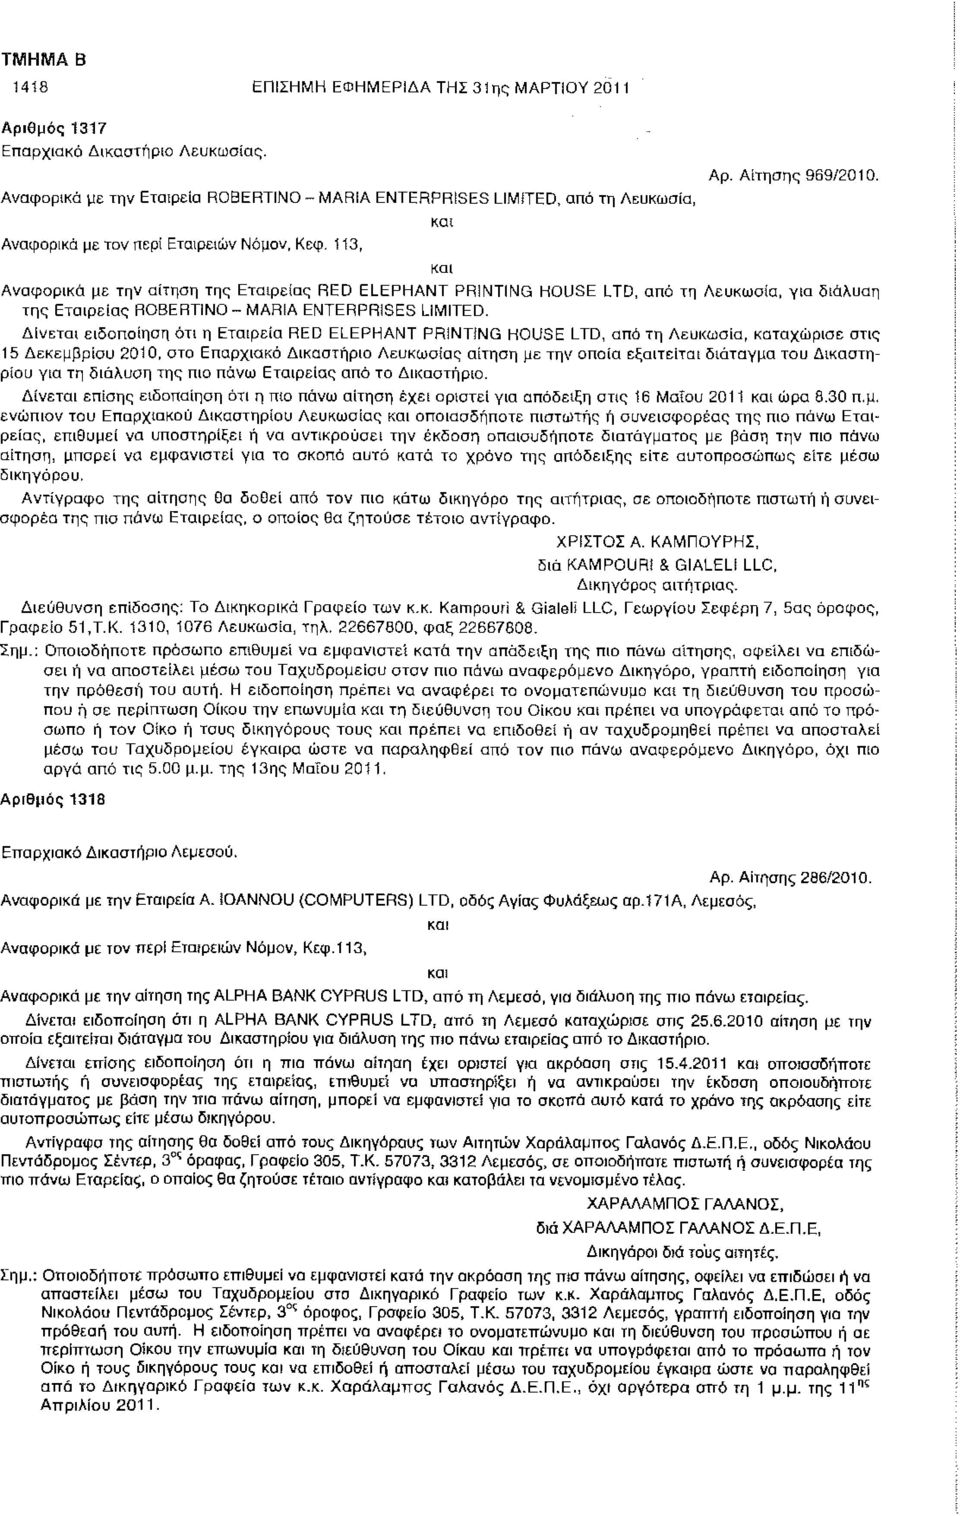 Αναφορικά με την αίτηση της Εταιρείας RED ELEPHANT PRINTING HOUSE LTD, από τη Λευκωσία, για διάλυση της Εταιρείας ROBERTINO - MARIA ENTERPRISES LIMITED.